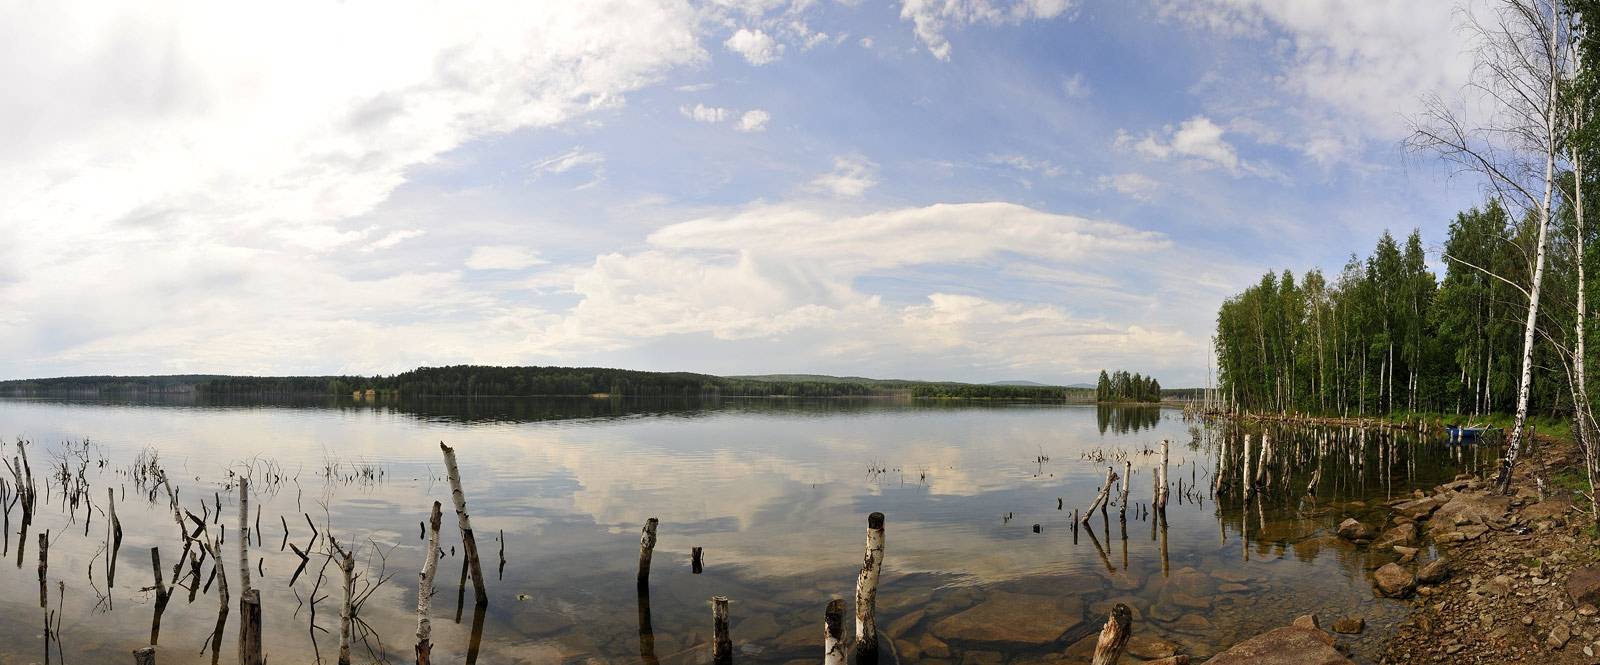 Озеро большой кременкуль, челябинская область – пляж, рыбалка, отдых, отзывы, как добраться, отели рядом на туристер.ру